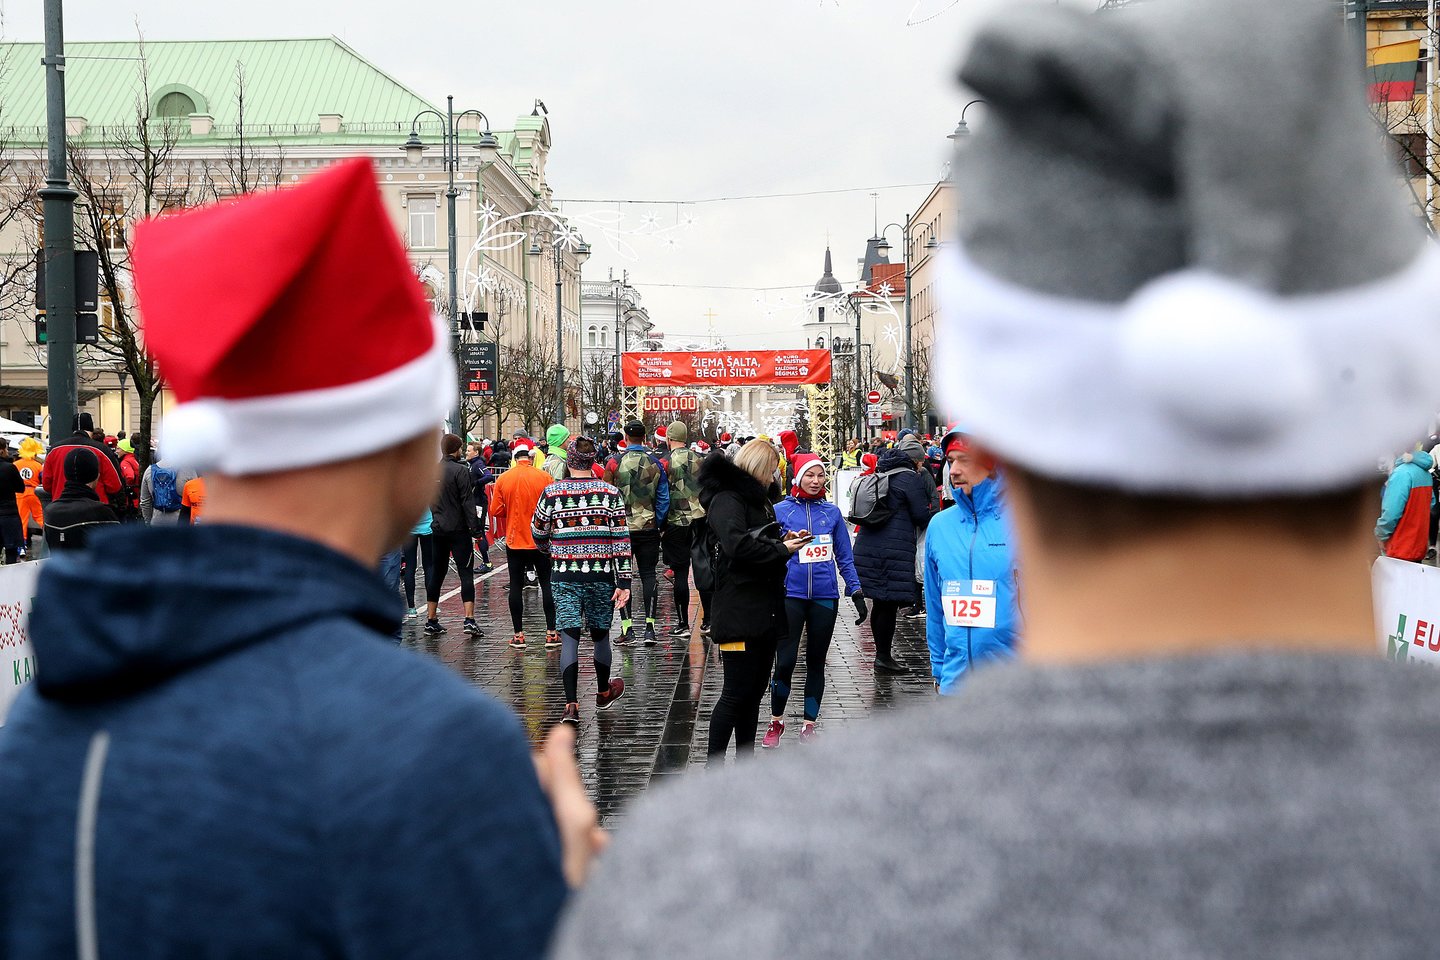 Jau šį šeštadienį Vilniuje vilniečiai ir miesto svečiai bėgs kalėdinėje bėgimo šventėje.<br>R.Danisevičiaus nuotr.